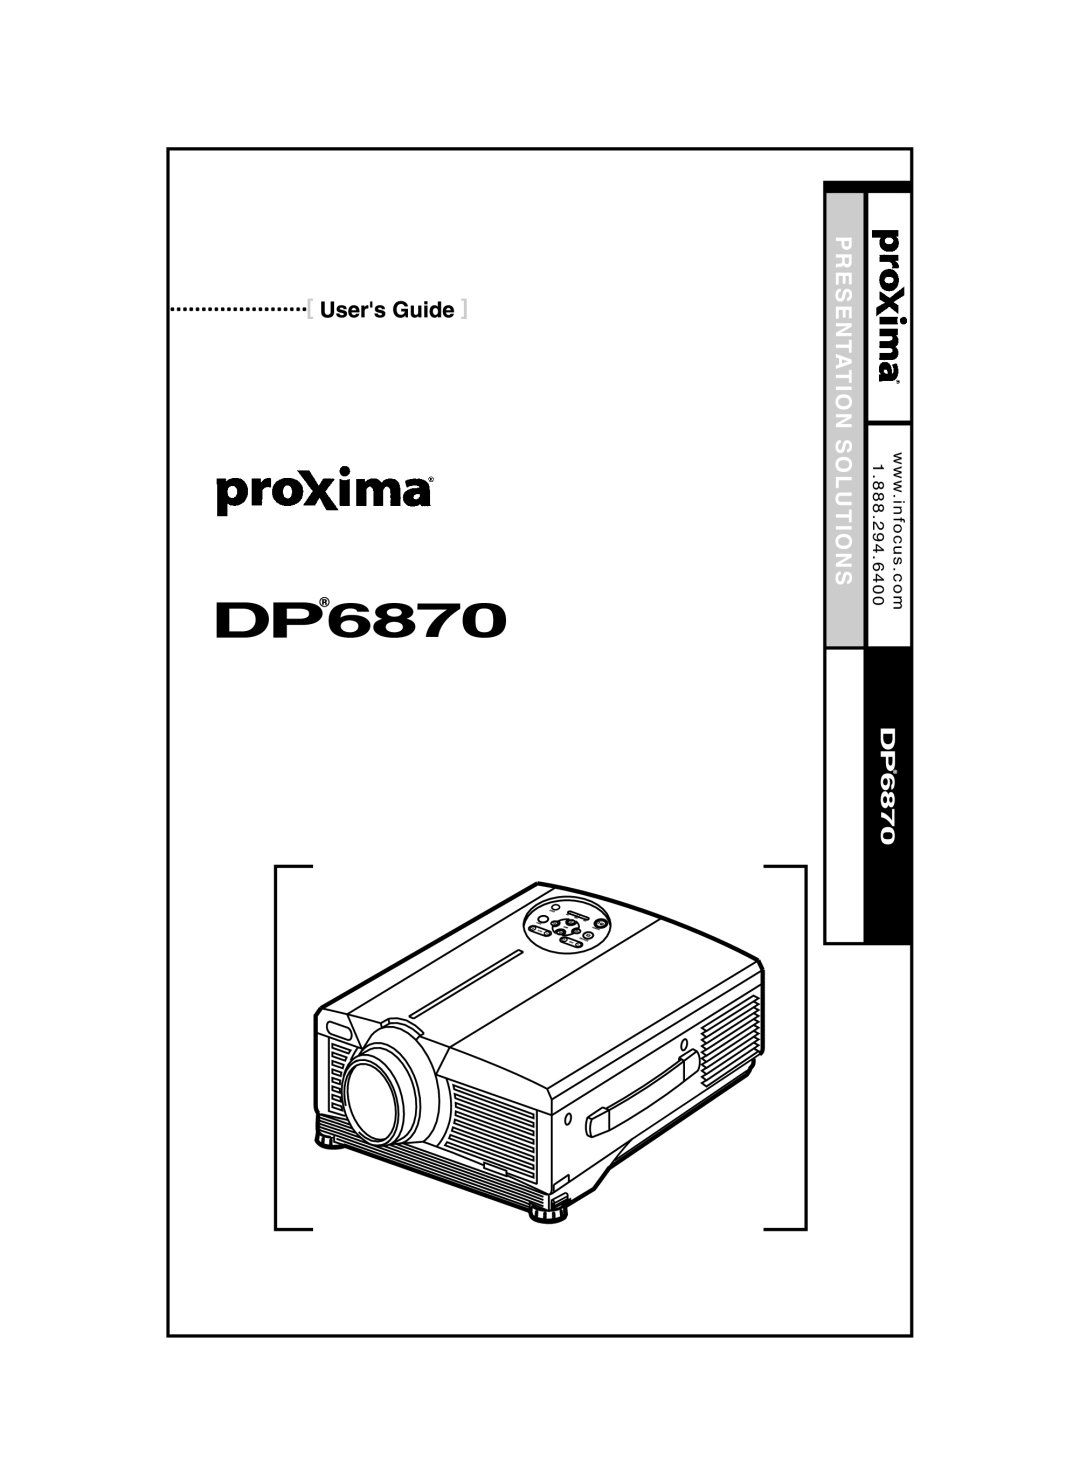 Proxima ASA DP6870 manual Presentation Solutions, Desktop Projector, wc o mw w in. focus, 1 . 8 8 8 . 2 9 4 . 6 4 0 